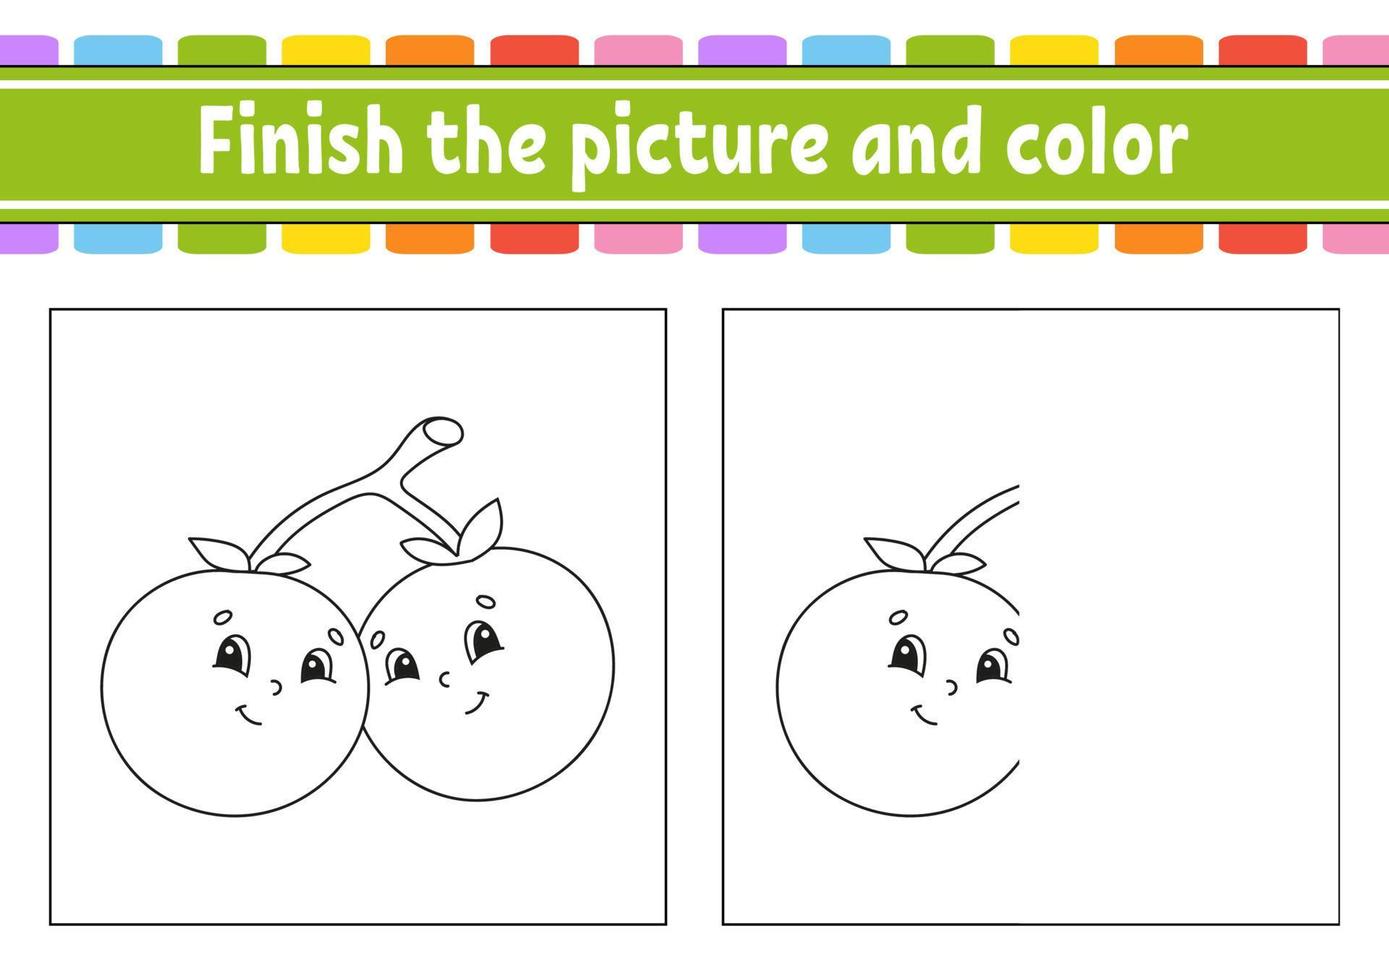 terminer l'image et la couleur. personnage de dessin animé isolé sur fond blanc. pour l'éducation des enfants. fiche d'activité. vecteur